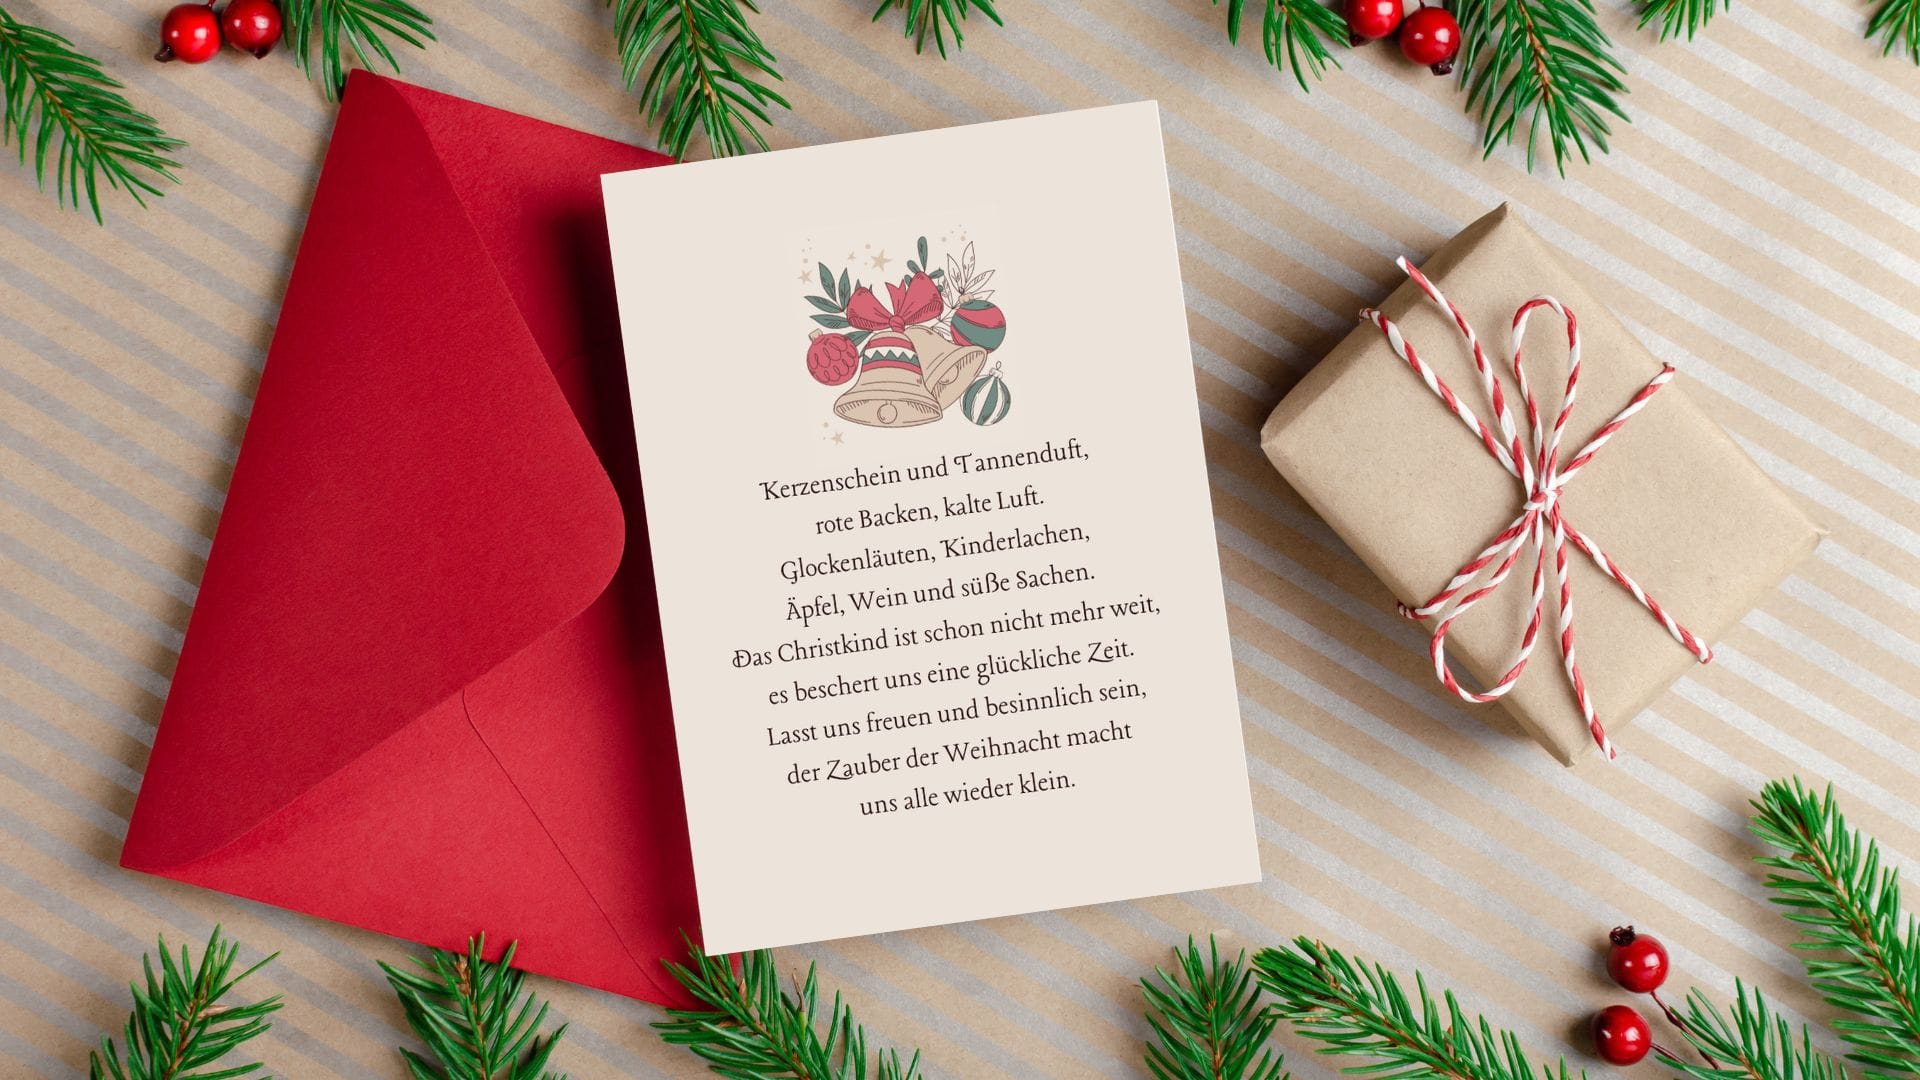 roter Umschlag und eine illustrierte Karte mit einem schönen Weihnachtsspruch